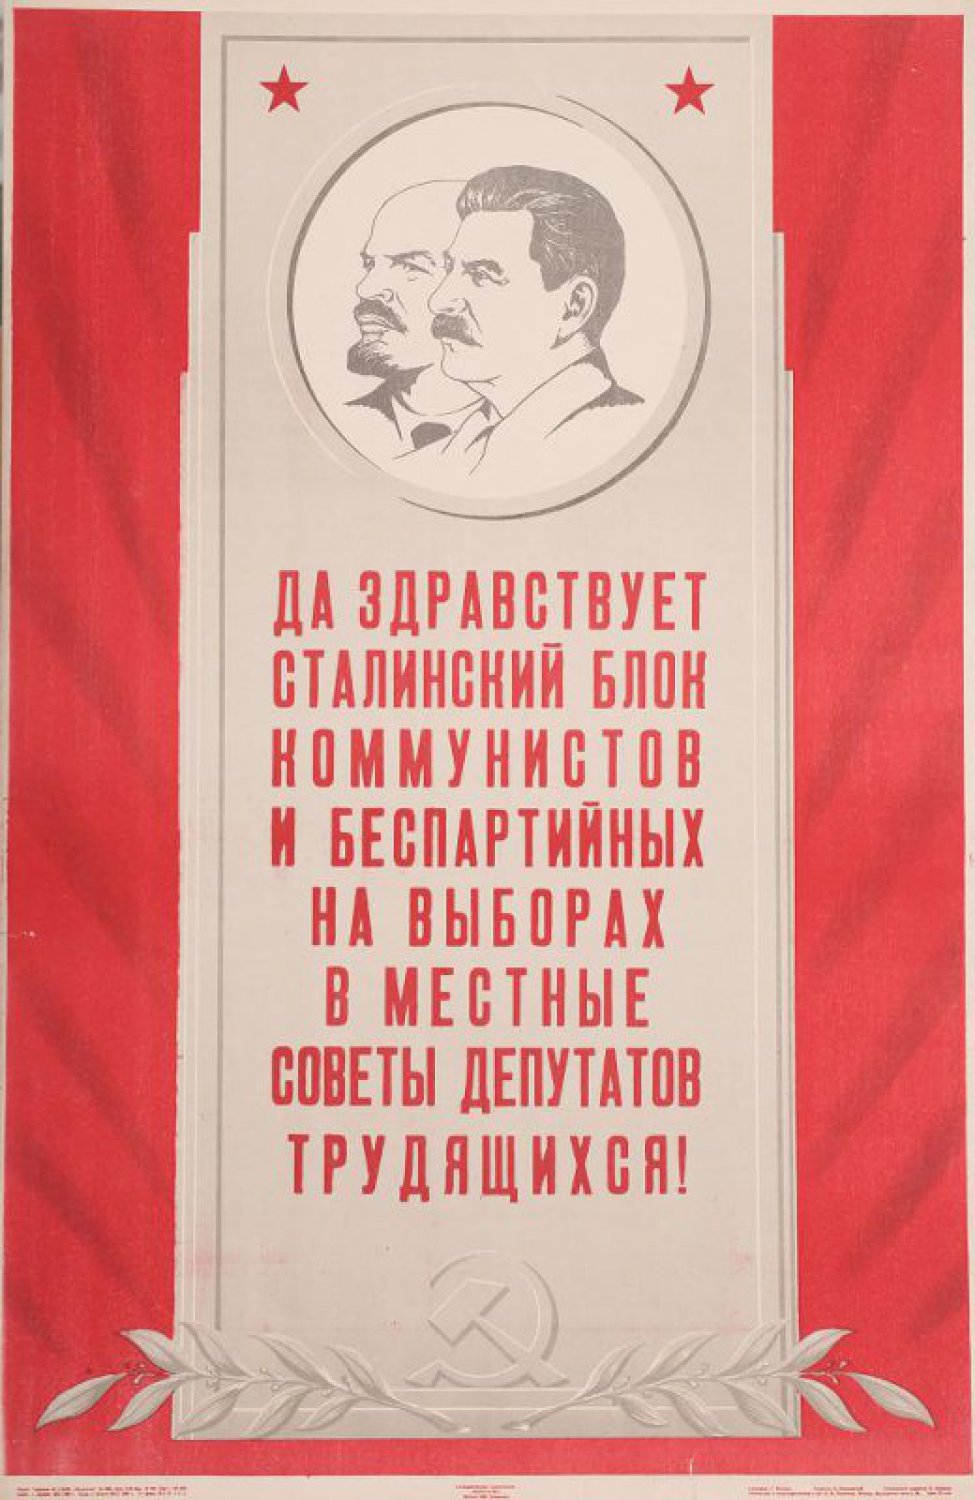 Изображены в середине на сером фоне портреты в профиль т.т. Ленина и Сталина.Ниже текст: " Да здравствует... трудящихся!" Ниже лавровая  ветвь и серп с молотом.